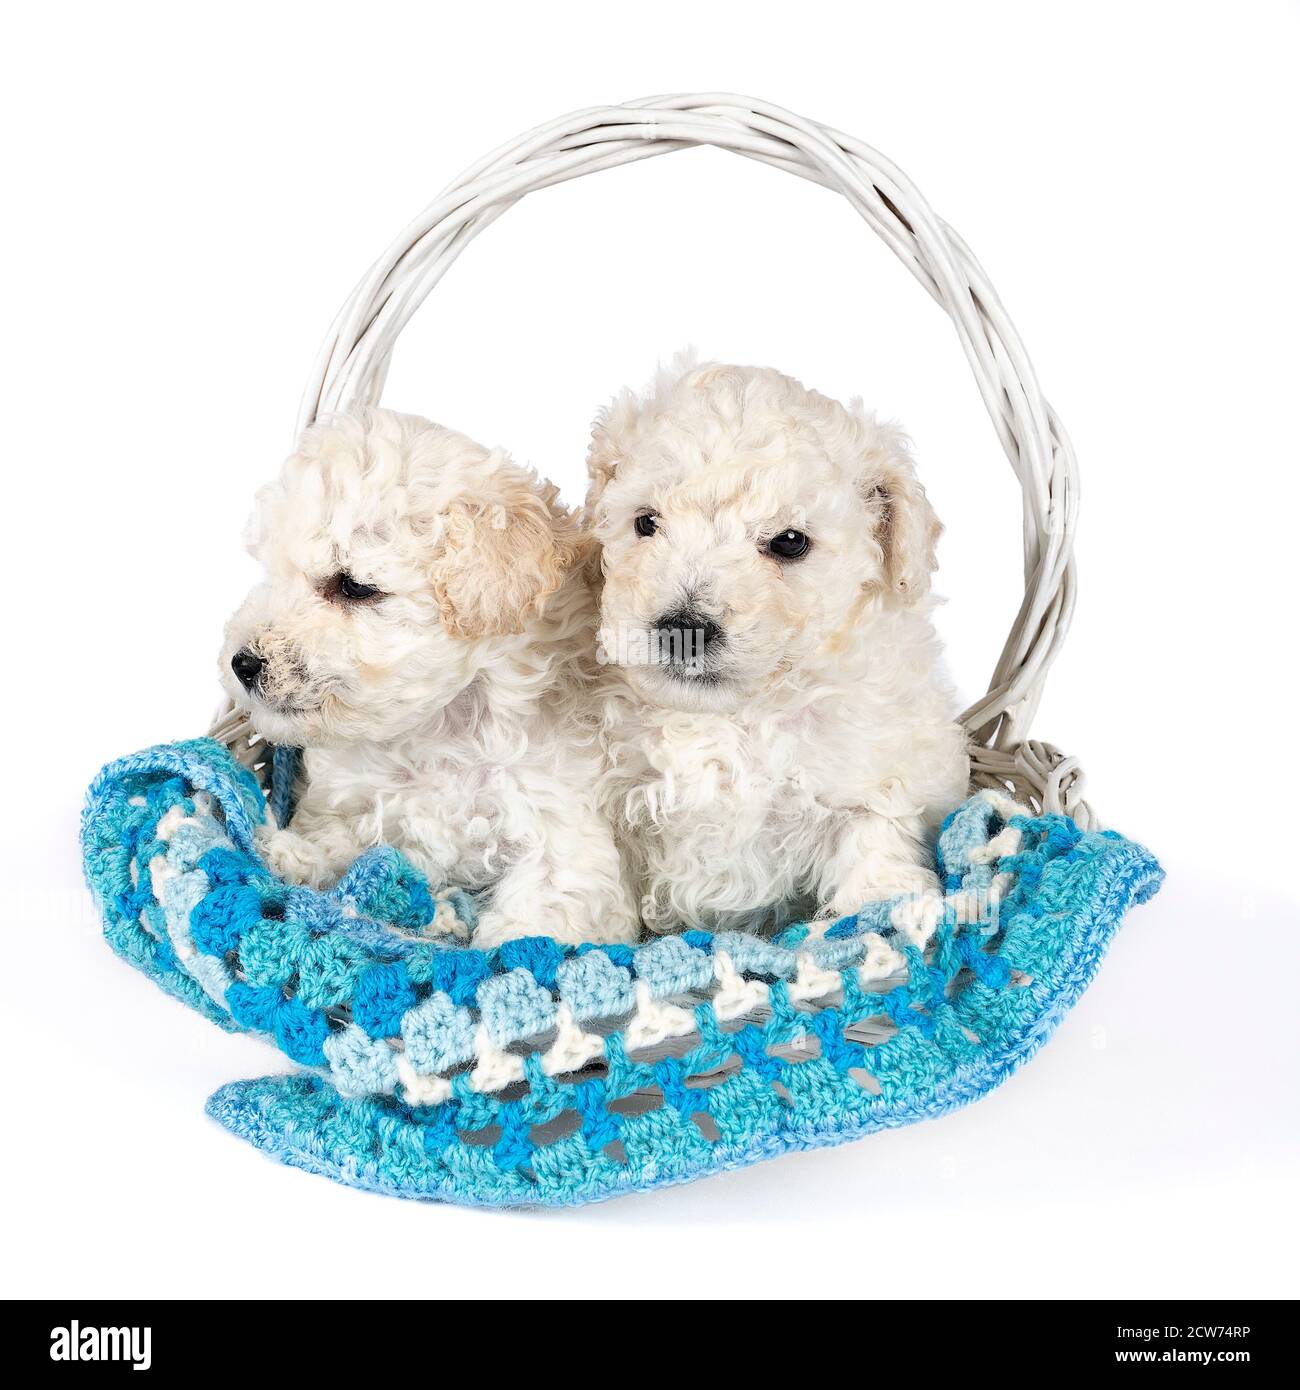 Una piccola poodle giocattolo in miniatura con pelliccia arricciata bianca dentro un cestino Foto Stock